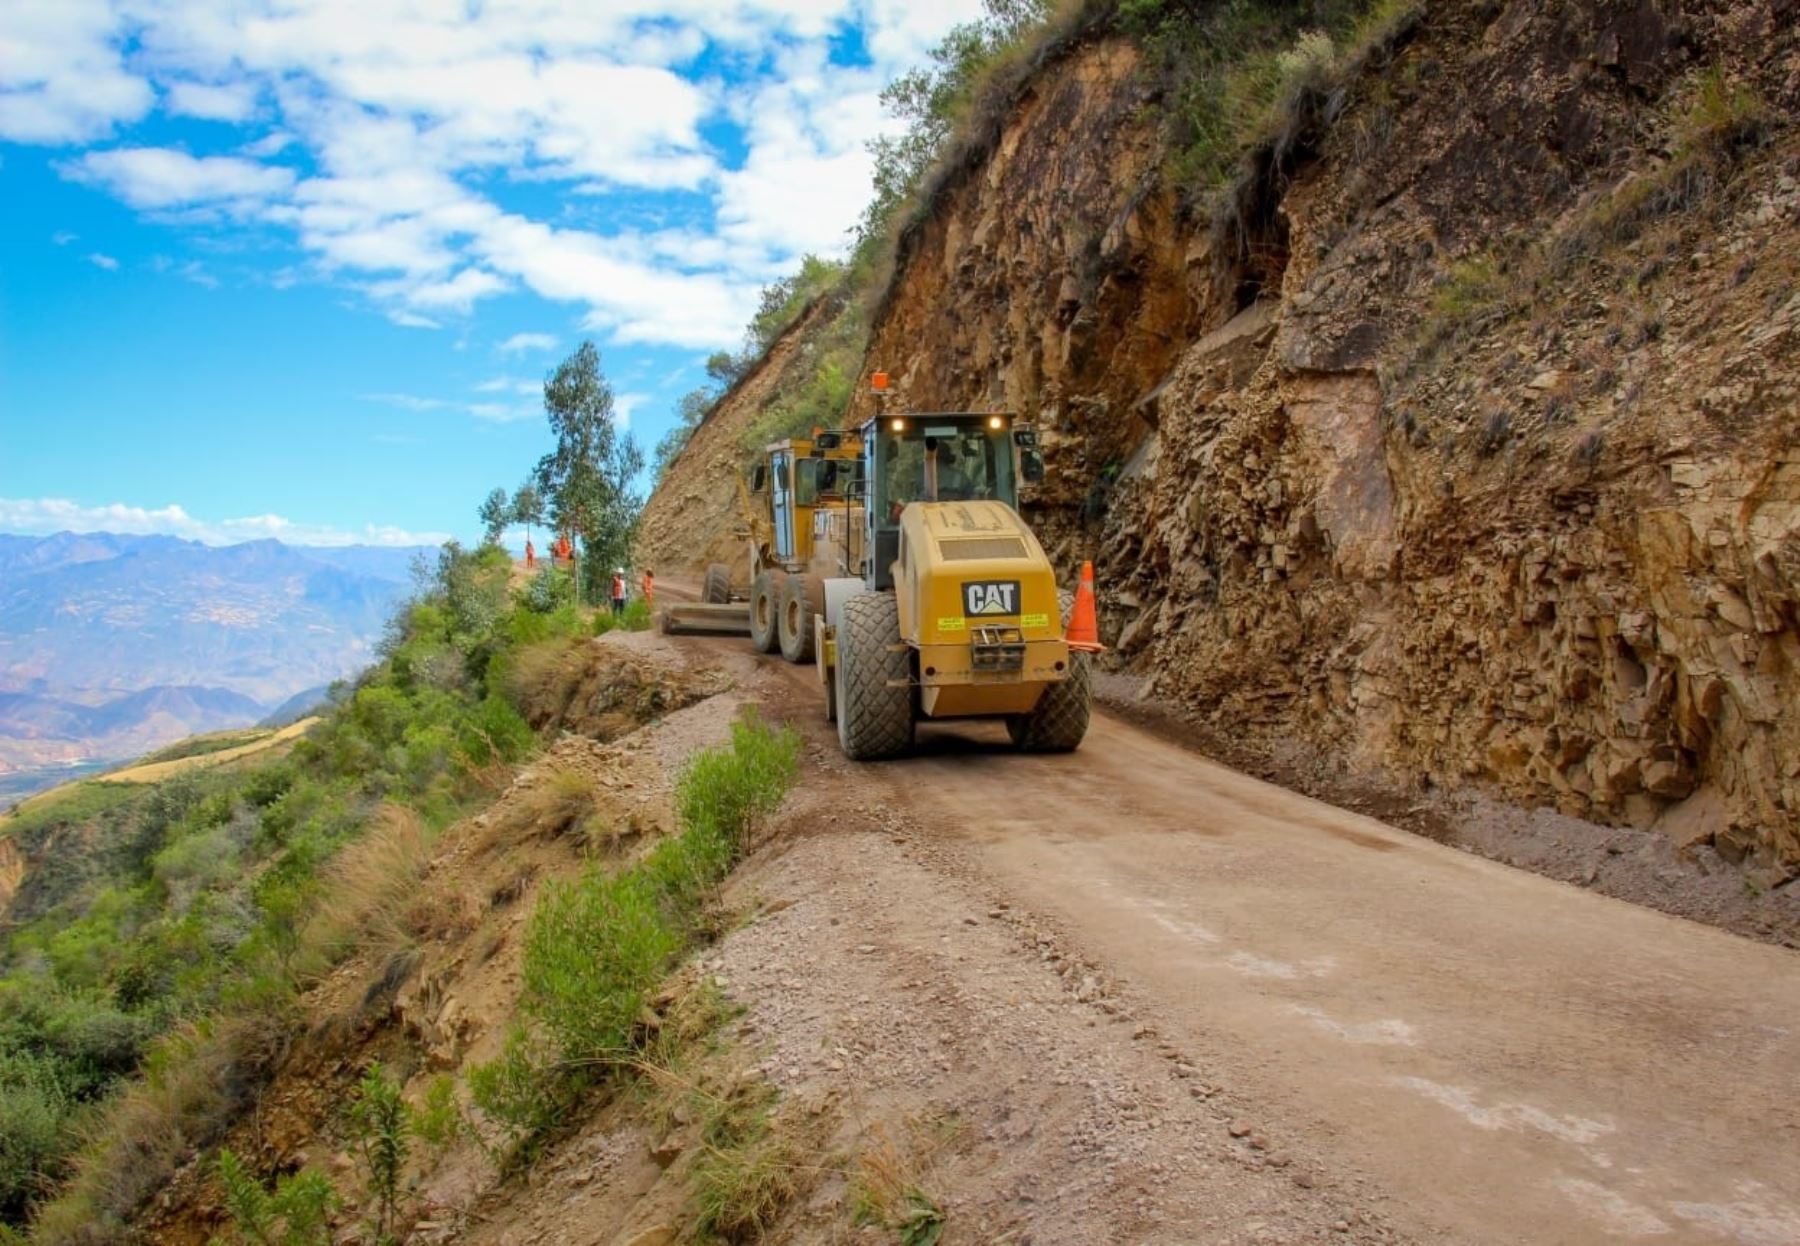 Huancavelica dinamizará su economía con inversión de S/ 280 millones en mantenimiento vial, gracias a la transferencia de recursos del Ejecutivo en el marco del programa Arranca Perú.